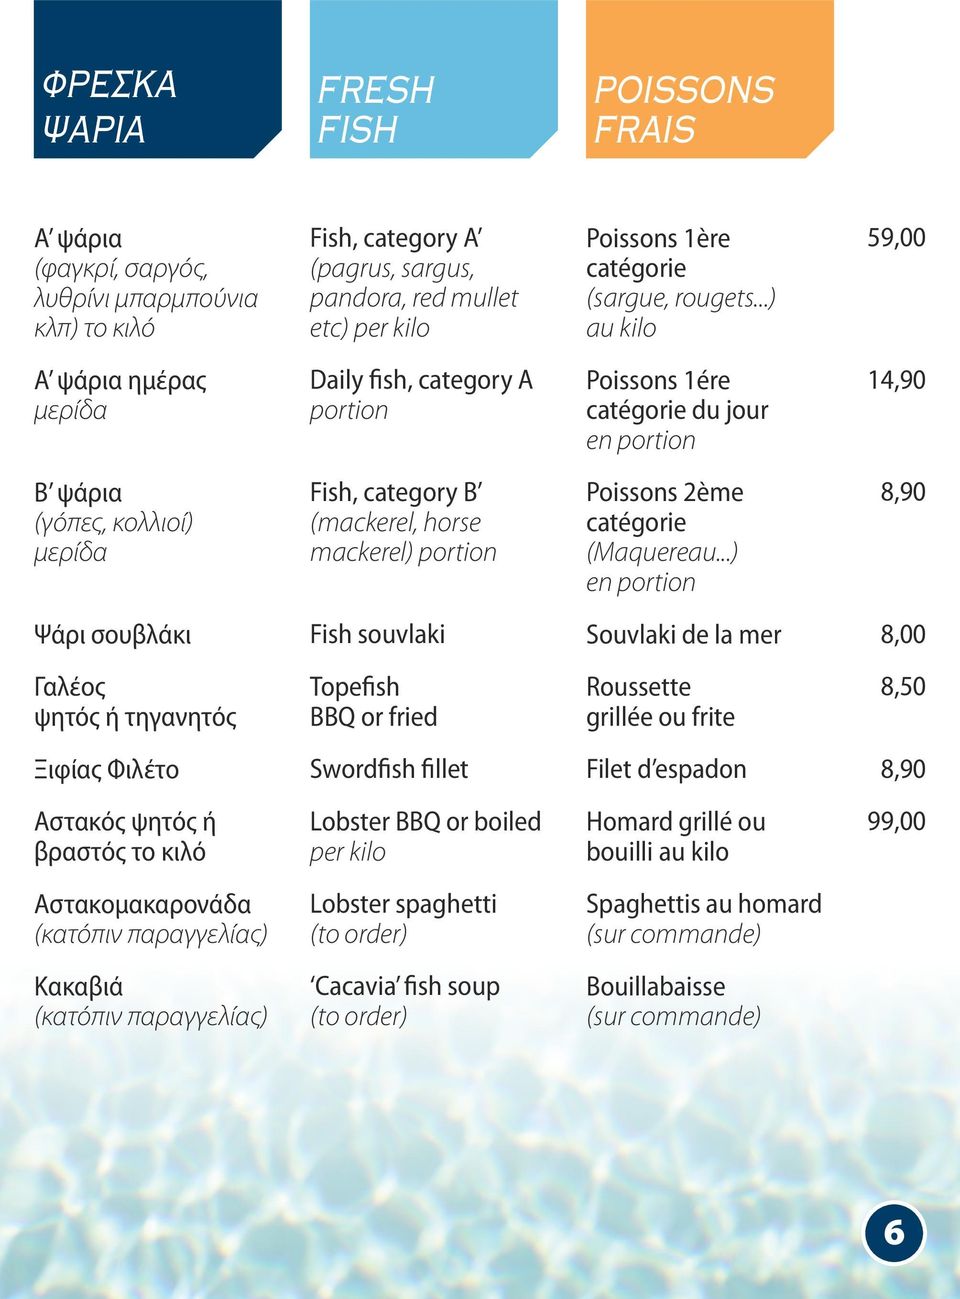 ..) au kilo 59,00 Α ψάρια ημέρας μερίδα Daily fish, category A portion Poissons 1ére catégorie du jour en portion 14,90 Β ψάρια (γόπες, κολλιοί) μερίδα Fish, category B (mackerel, horse mackerel)